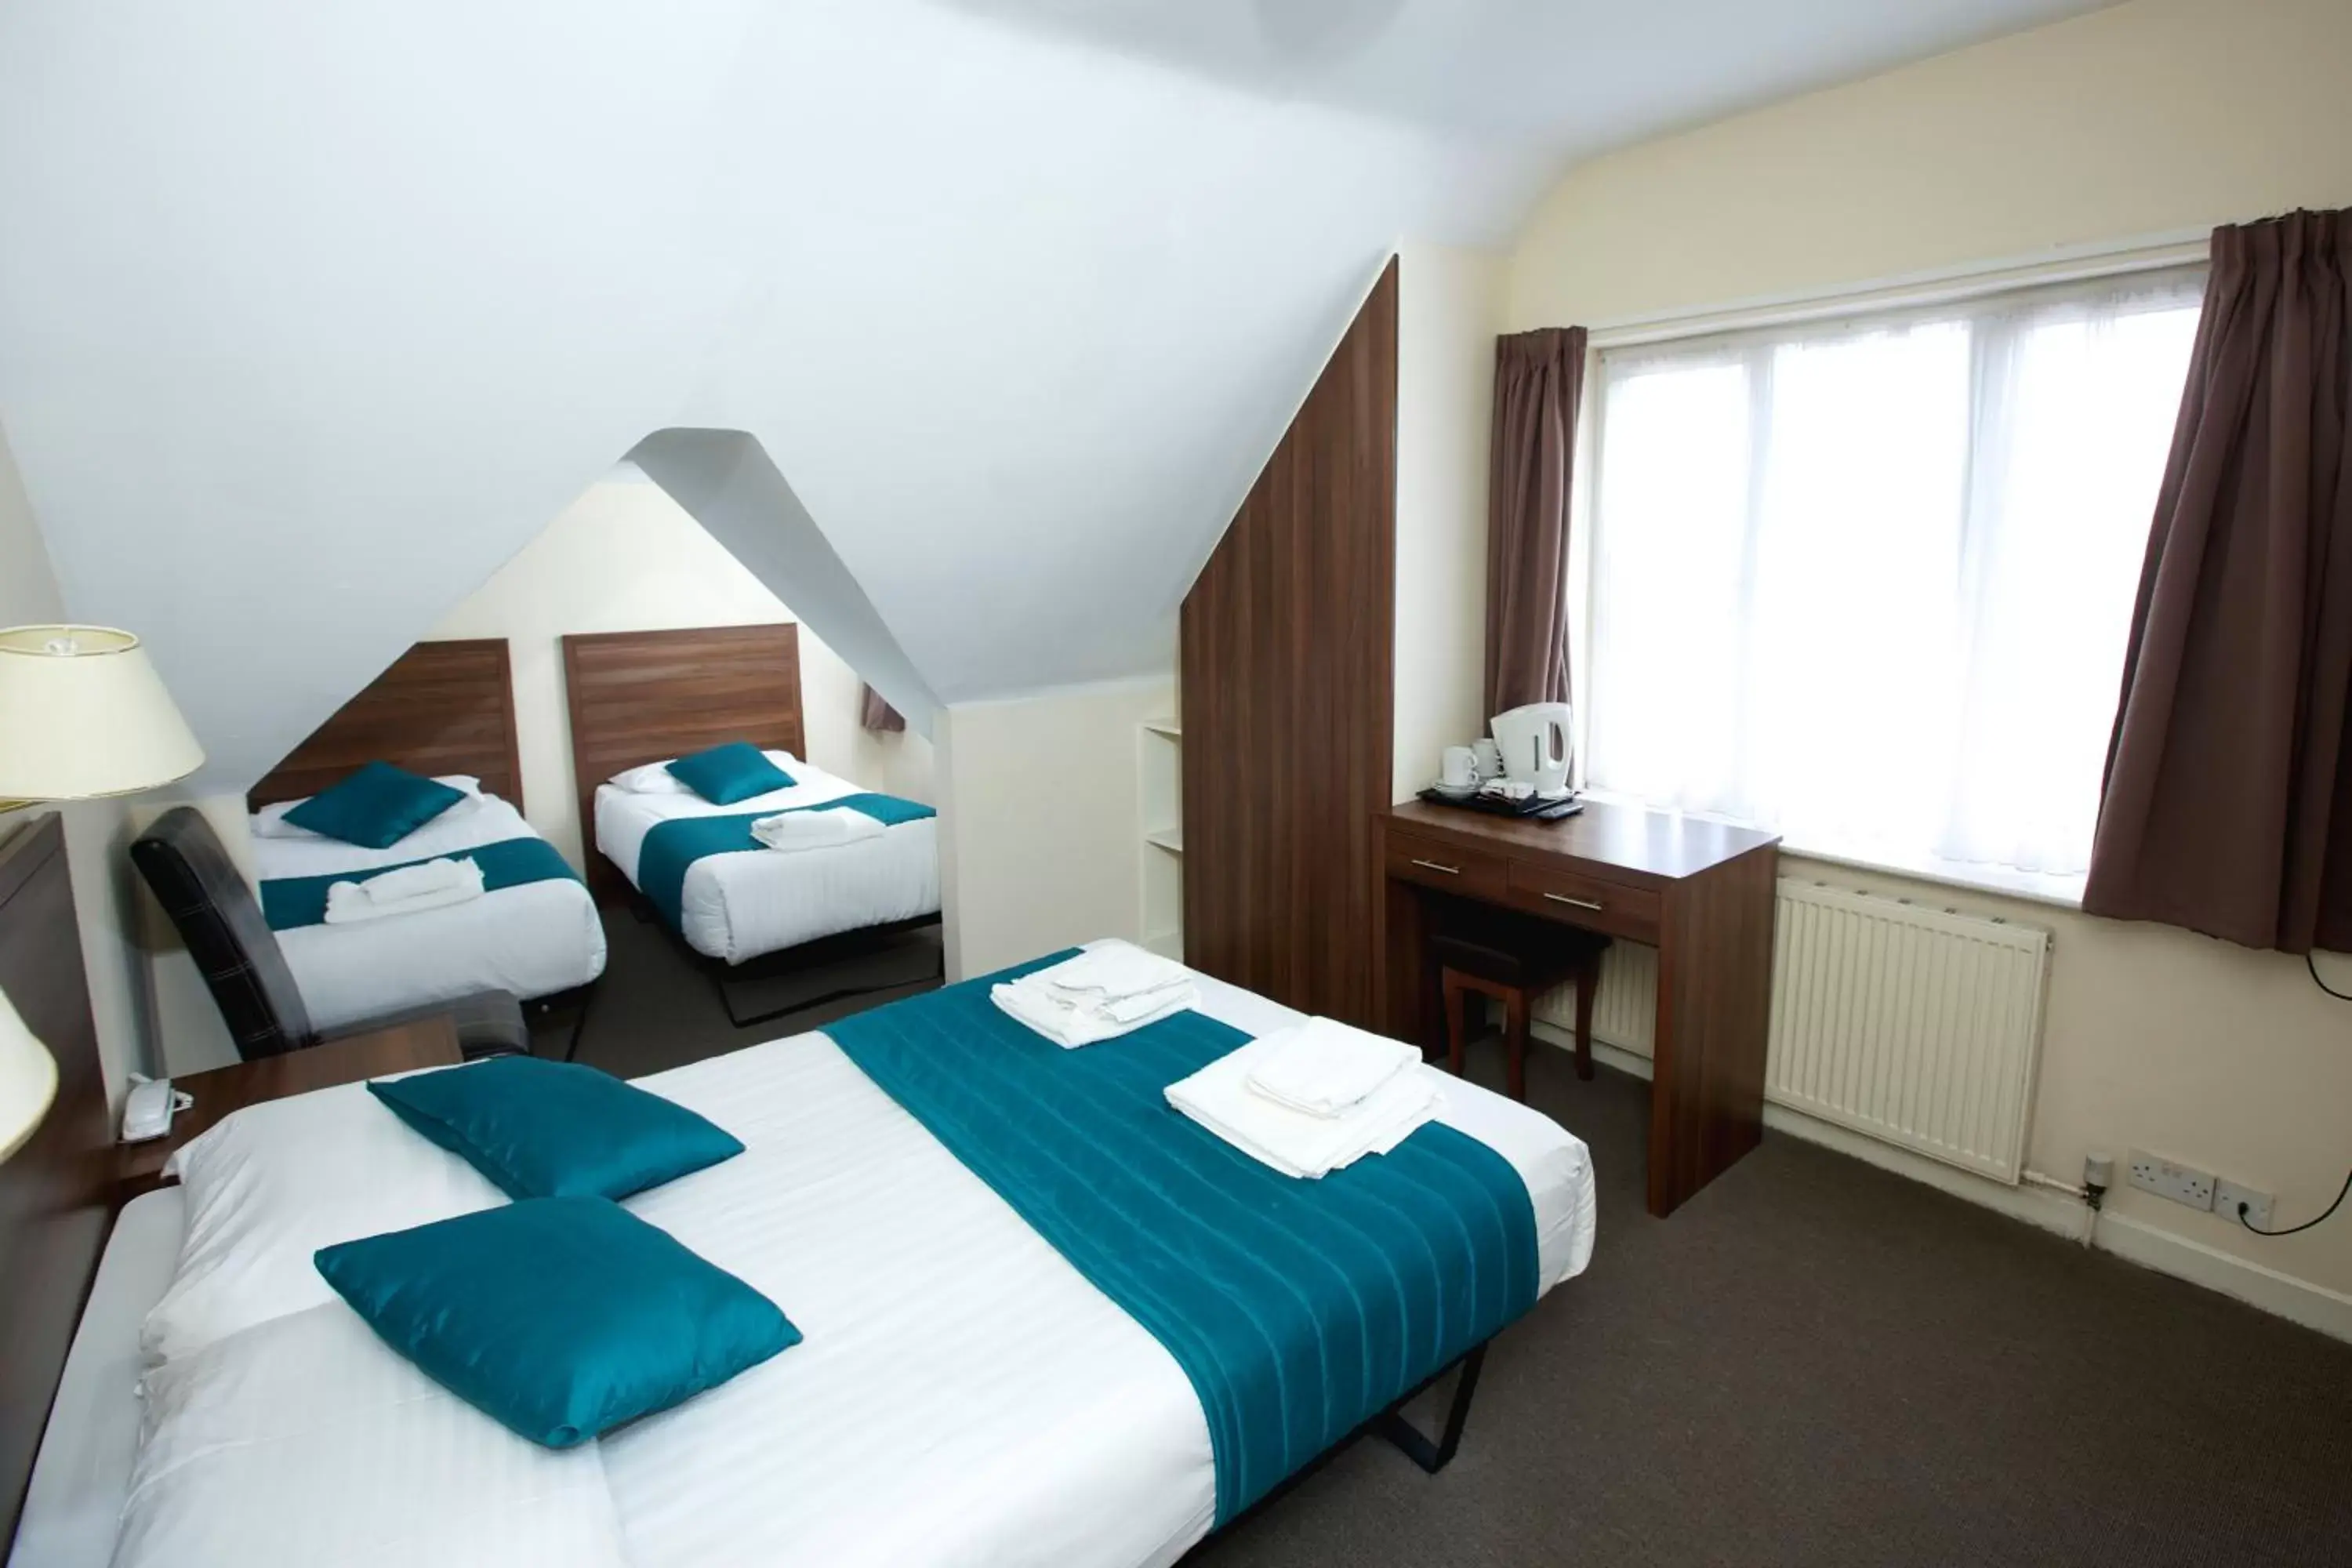 Bedroom, Bed in King Solomon Hotel- Golders Green